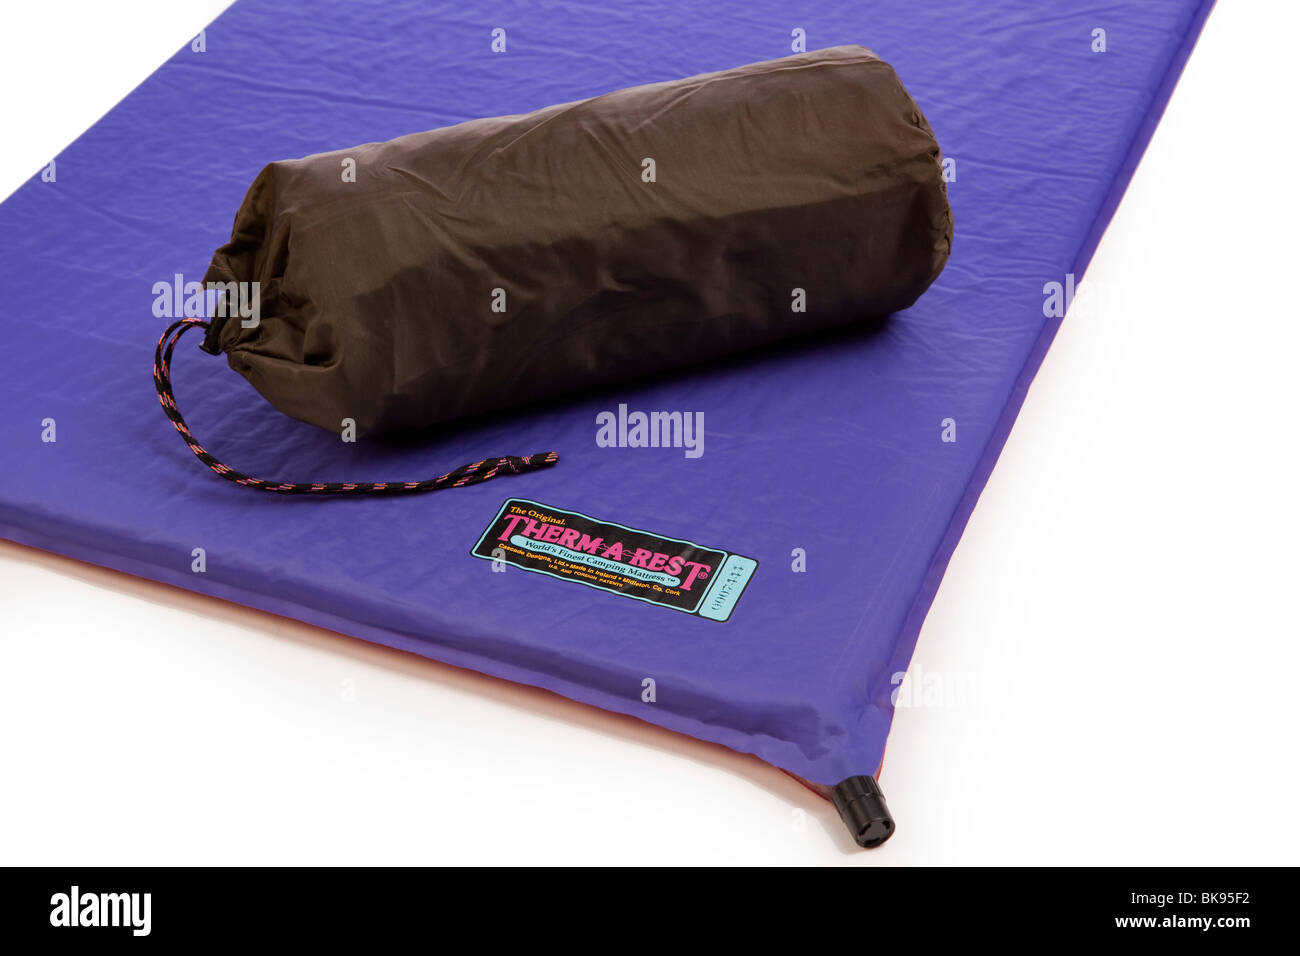 Campingausrüstung, Therm erholend selbst aufblasen camping Matratze aufgeblasen und in kompakten Sack verpackt Stockfoto